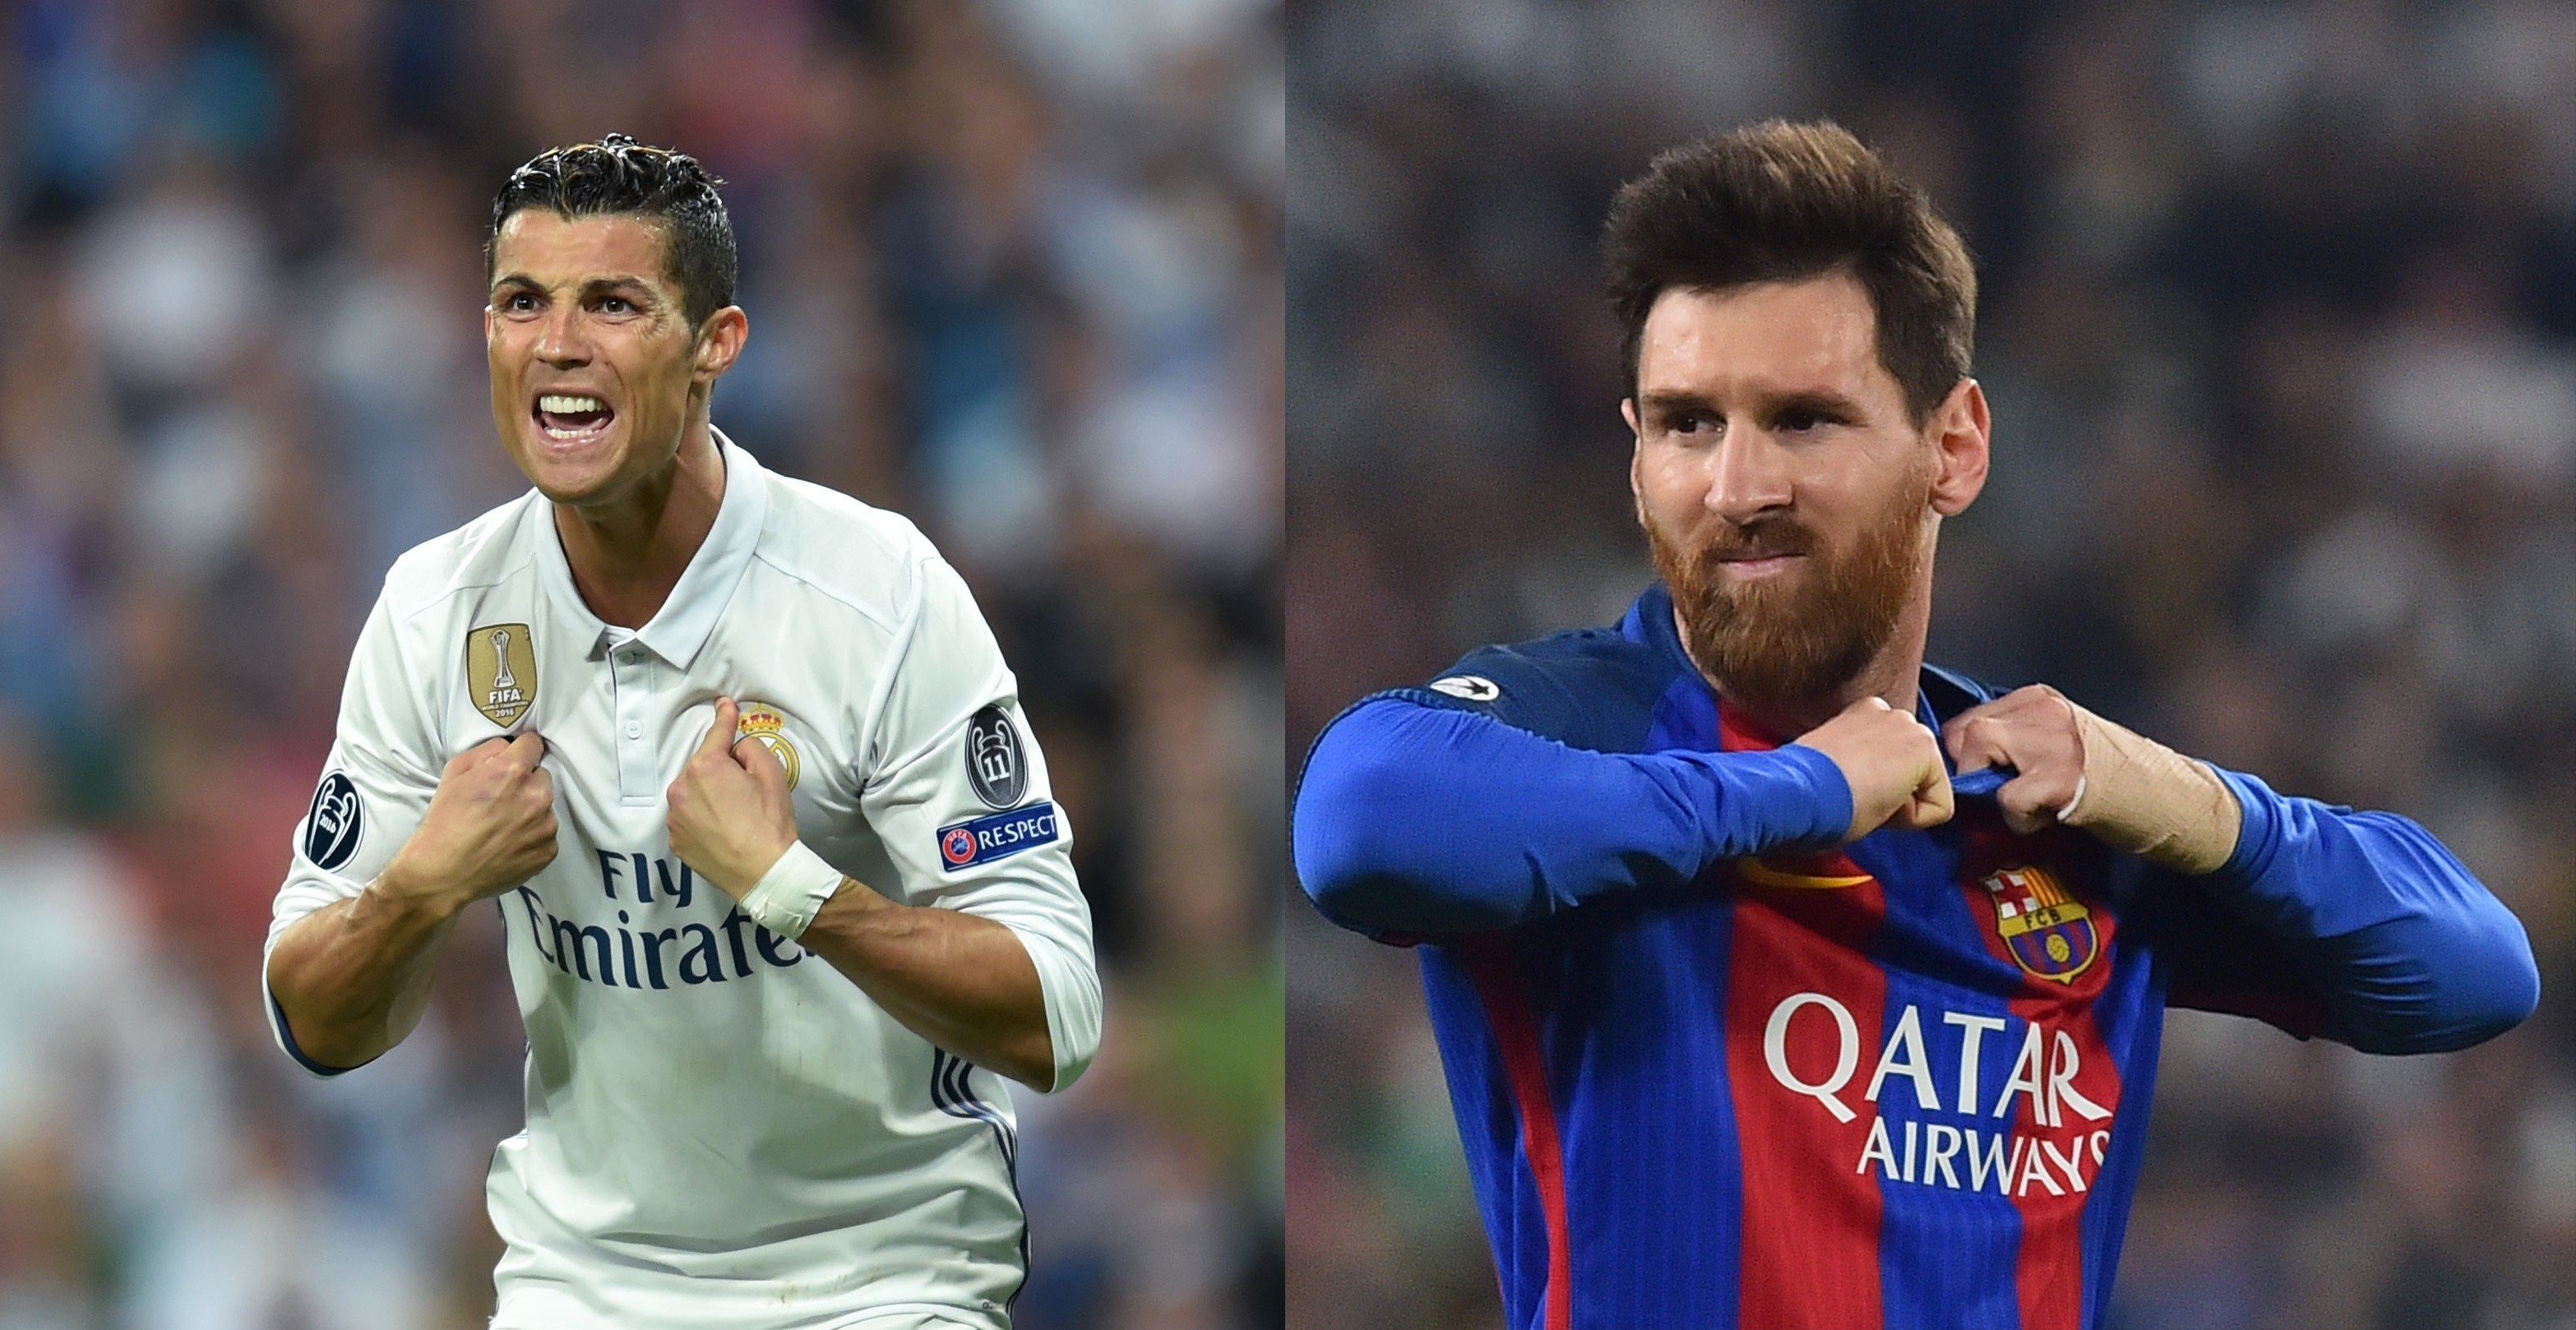 3133x1618 ... Cristiano Ronaldo Vs Lionel Messi soccer Superstars Face Off Sunday ...